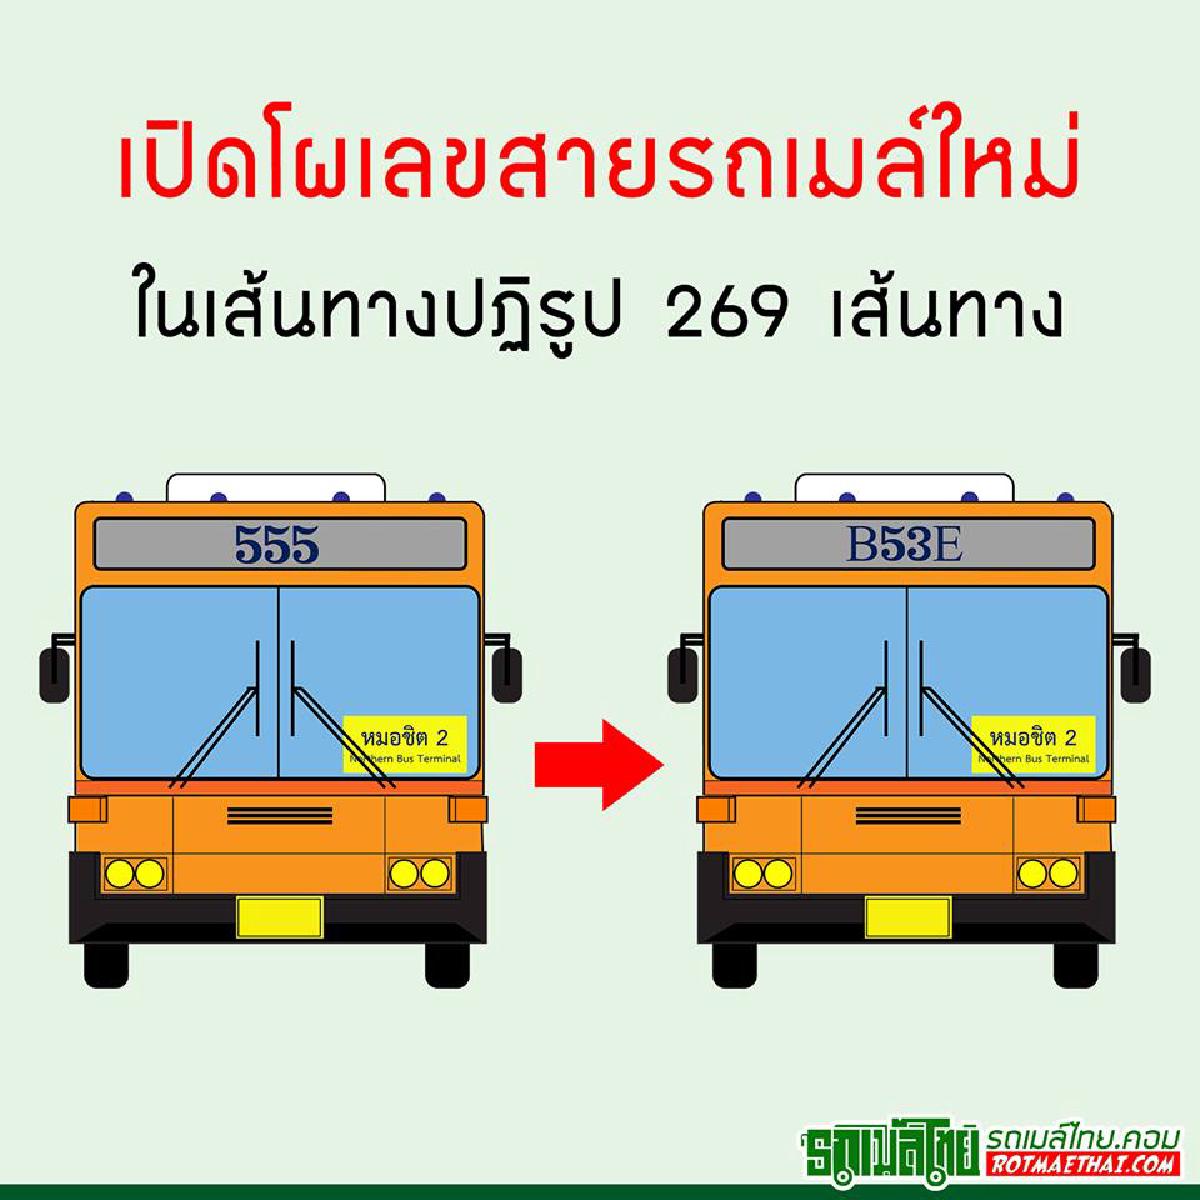 สุดงง!!! เปลี่ยนสายเลขรถเมล์ใหม่ 269 เส้นทาง ทำไปทำไม??